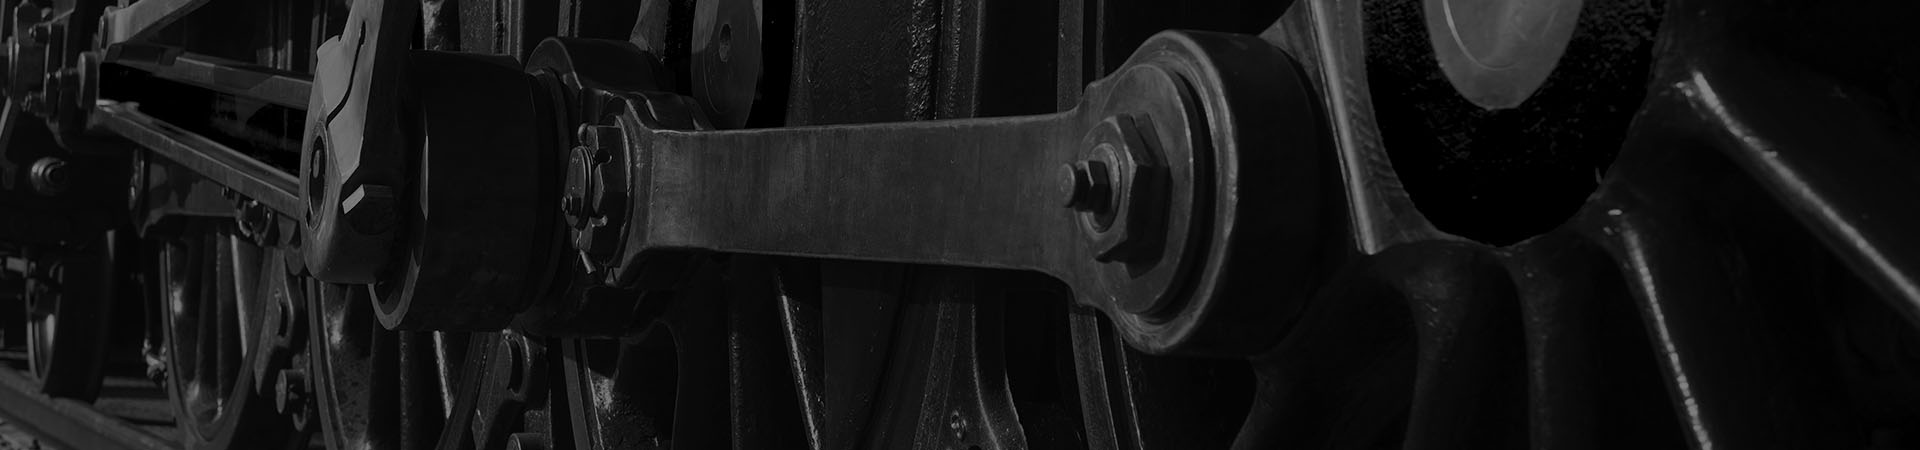 Photographie de détail des roues d'une locomotive